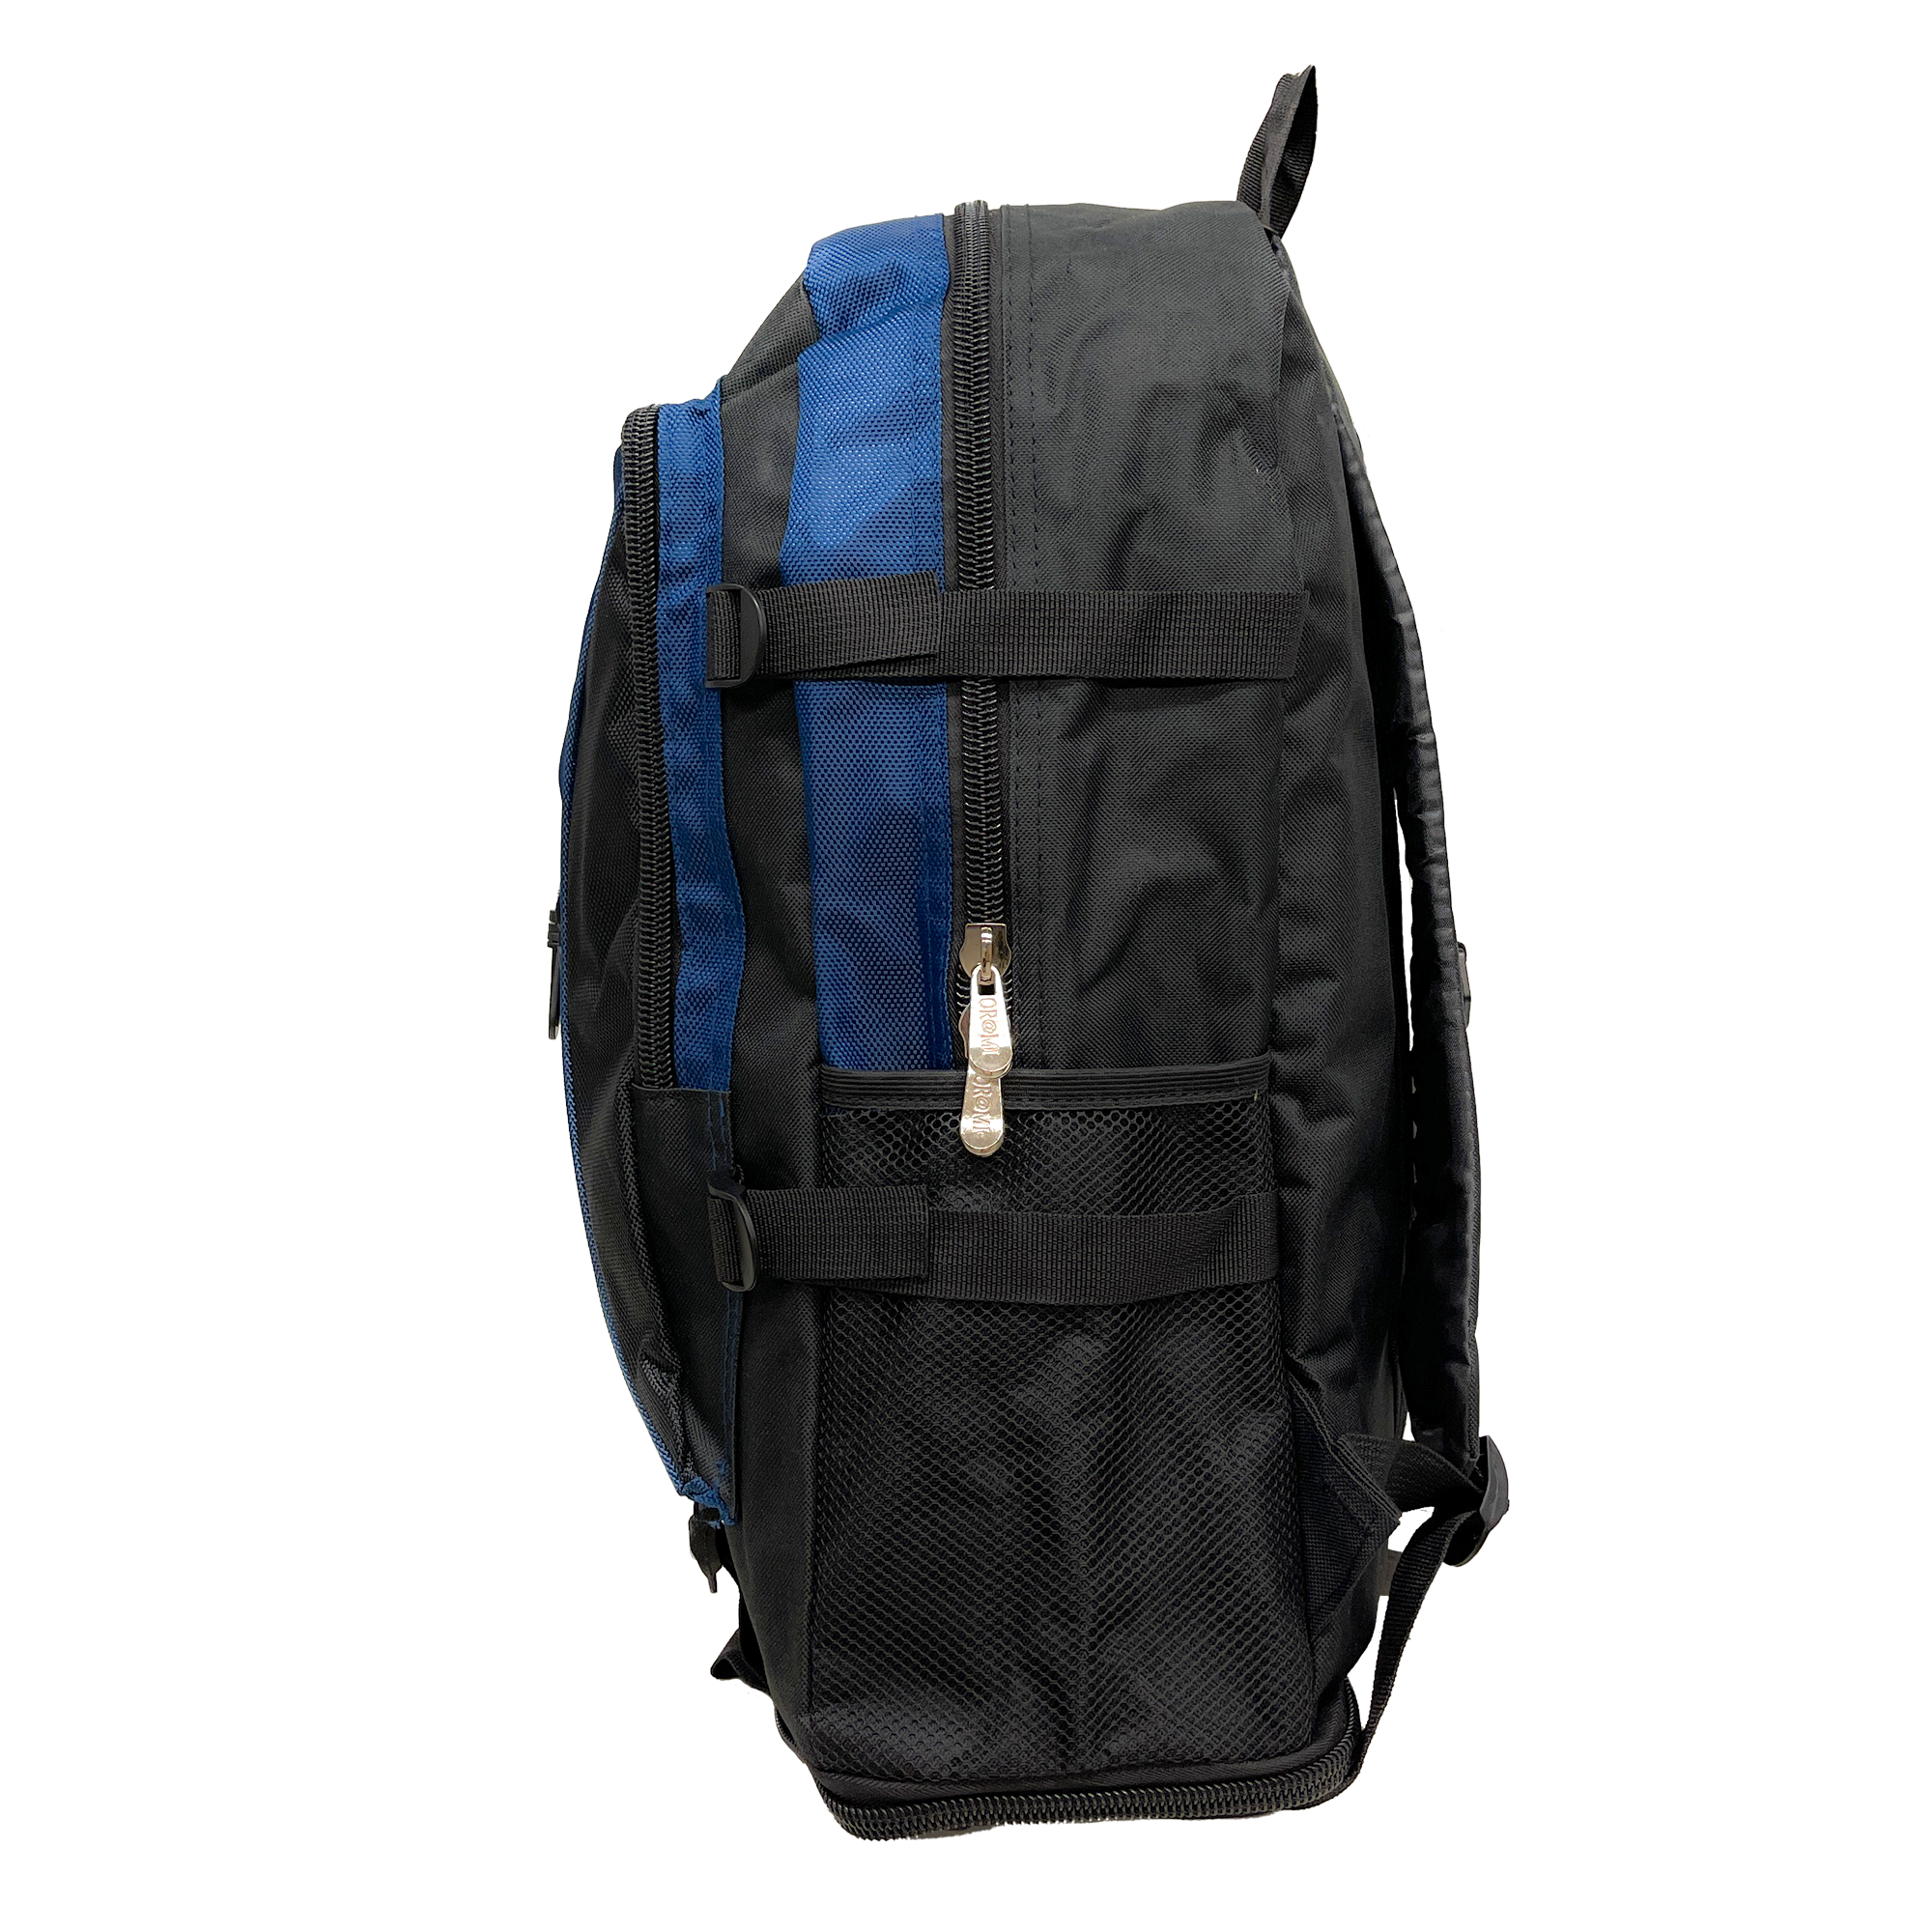 Or@mi Backpack Adventure 360: Versatilità e Confort per Ogni Escursione 60 x 36 cm - Allingro